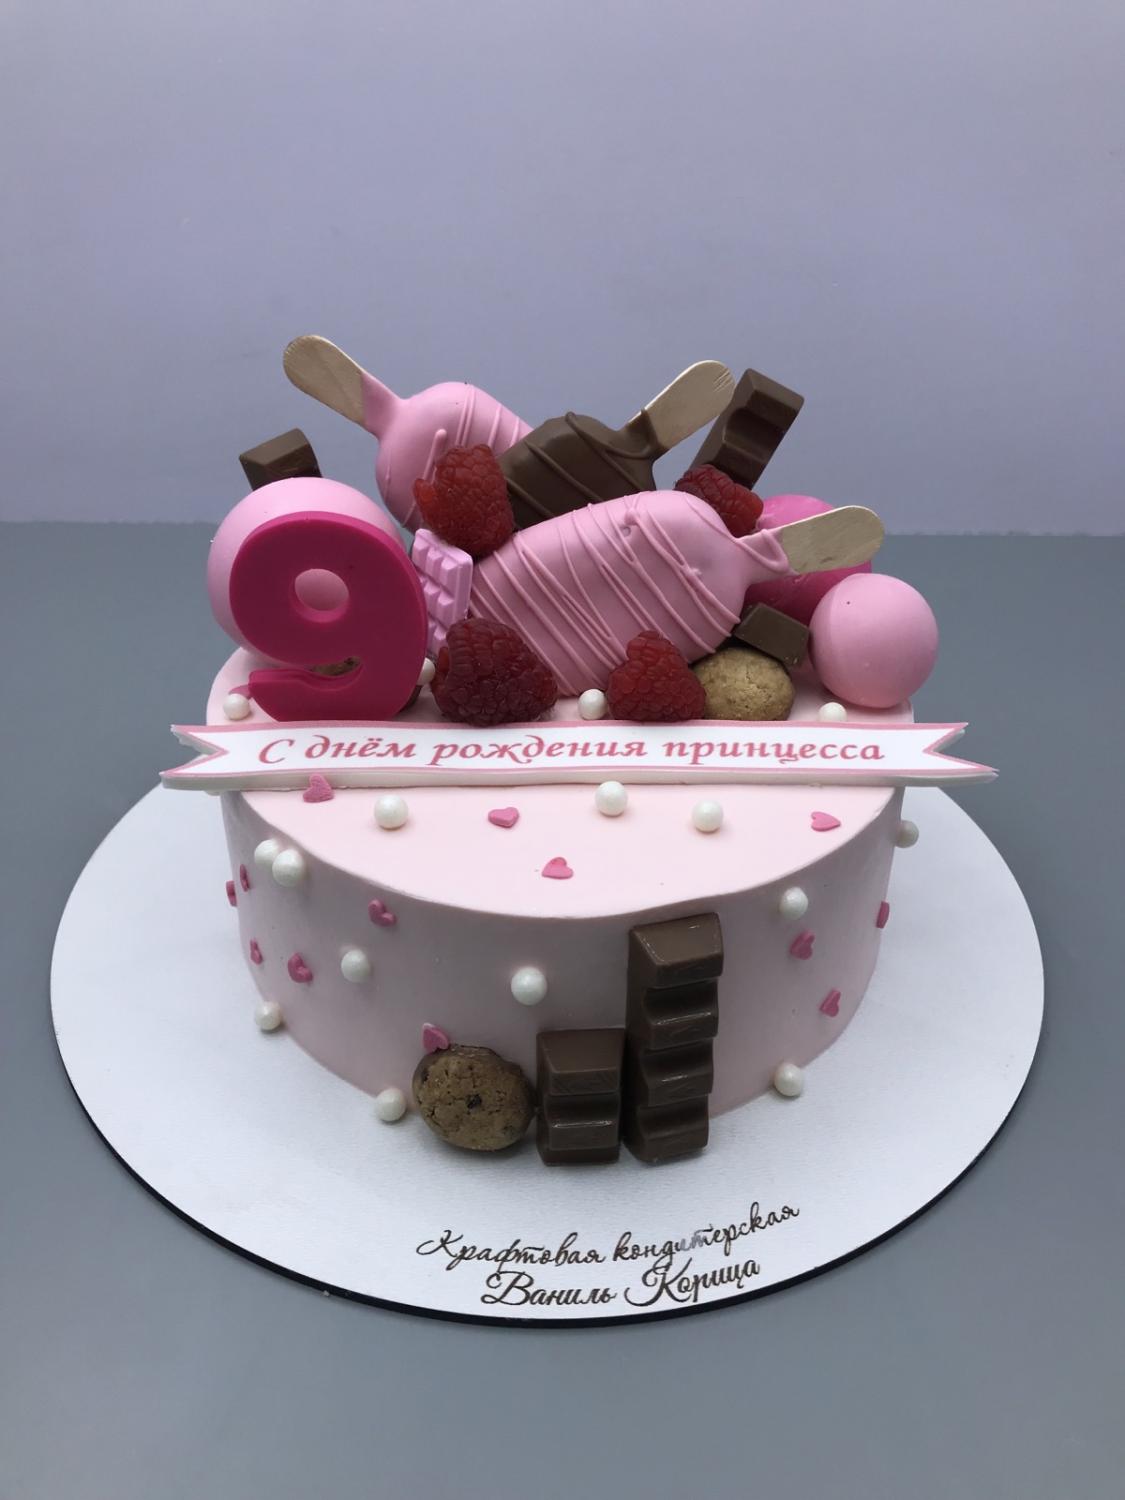 Детский торт Ванильный с клубникой #24 в кондитерской cake64.ru фото